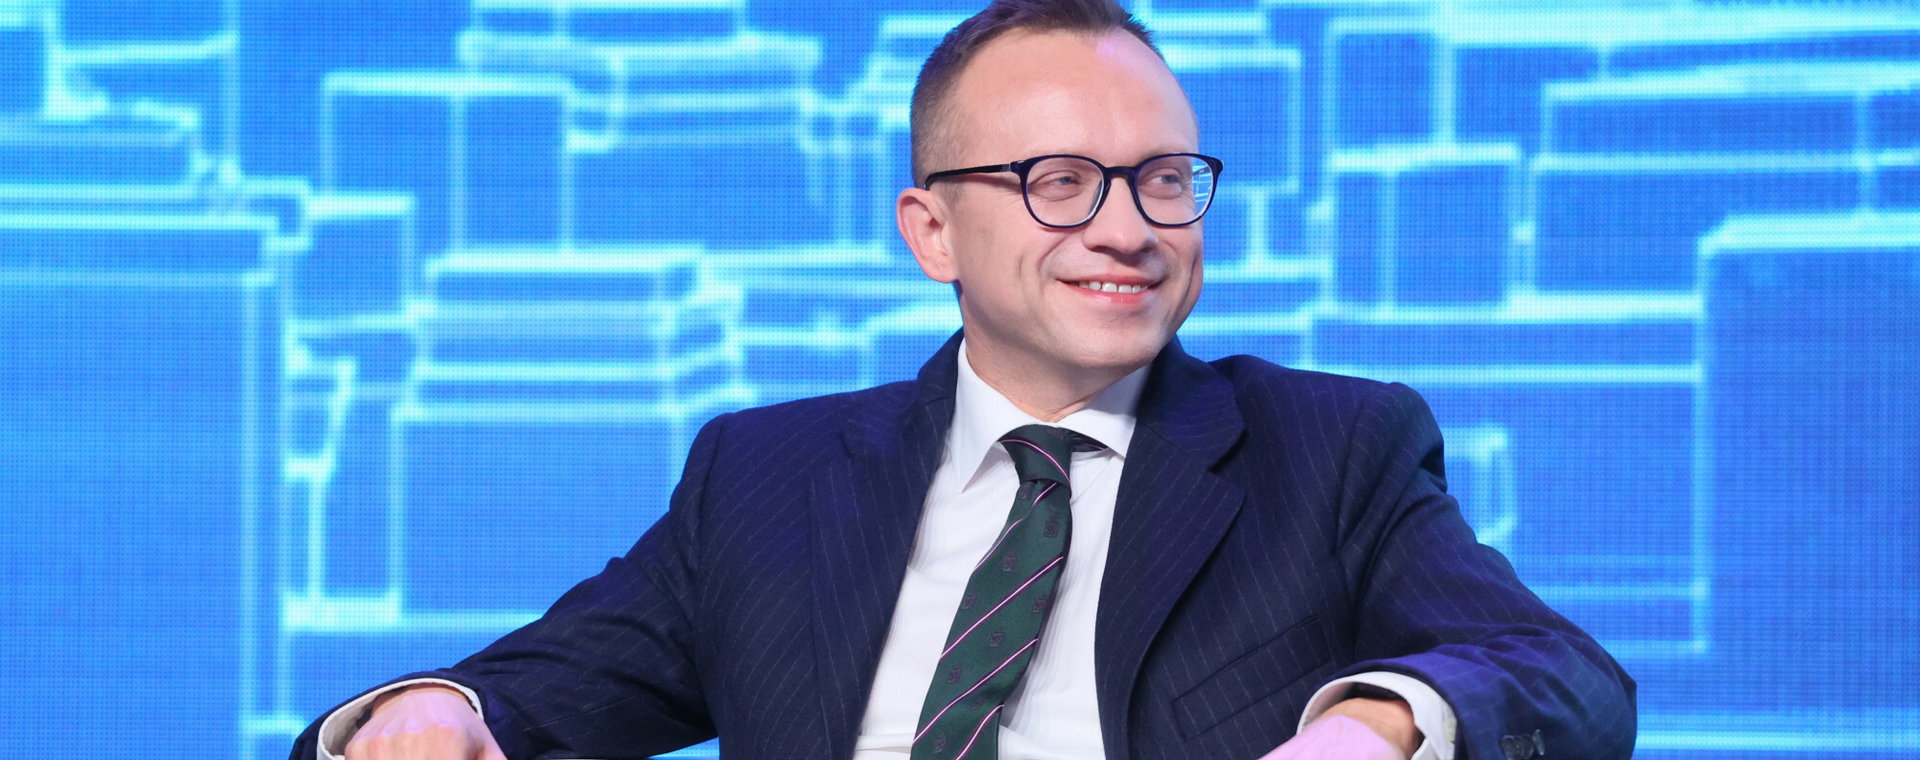 Artur Soboń, jako wiceminister finansów, odpowiada za sprawy podatkowe w rządzie